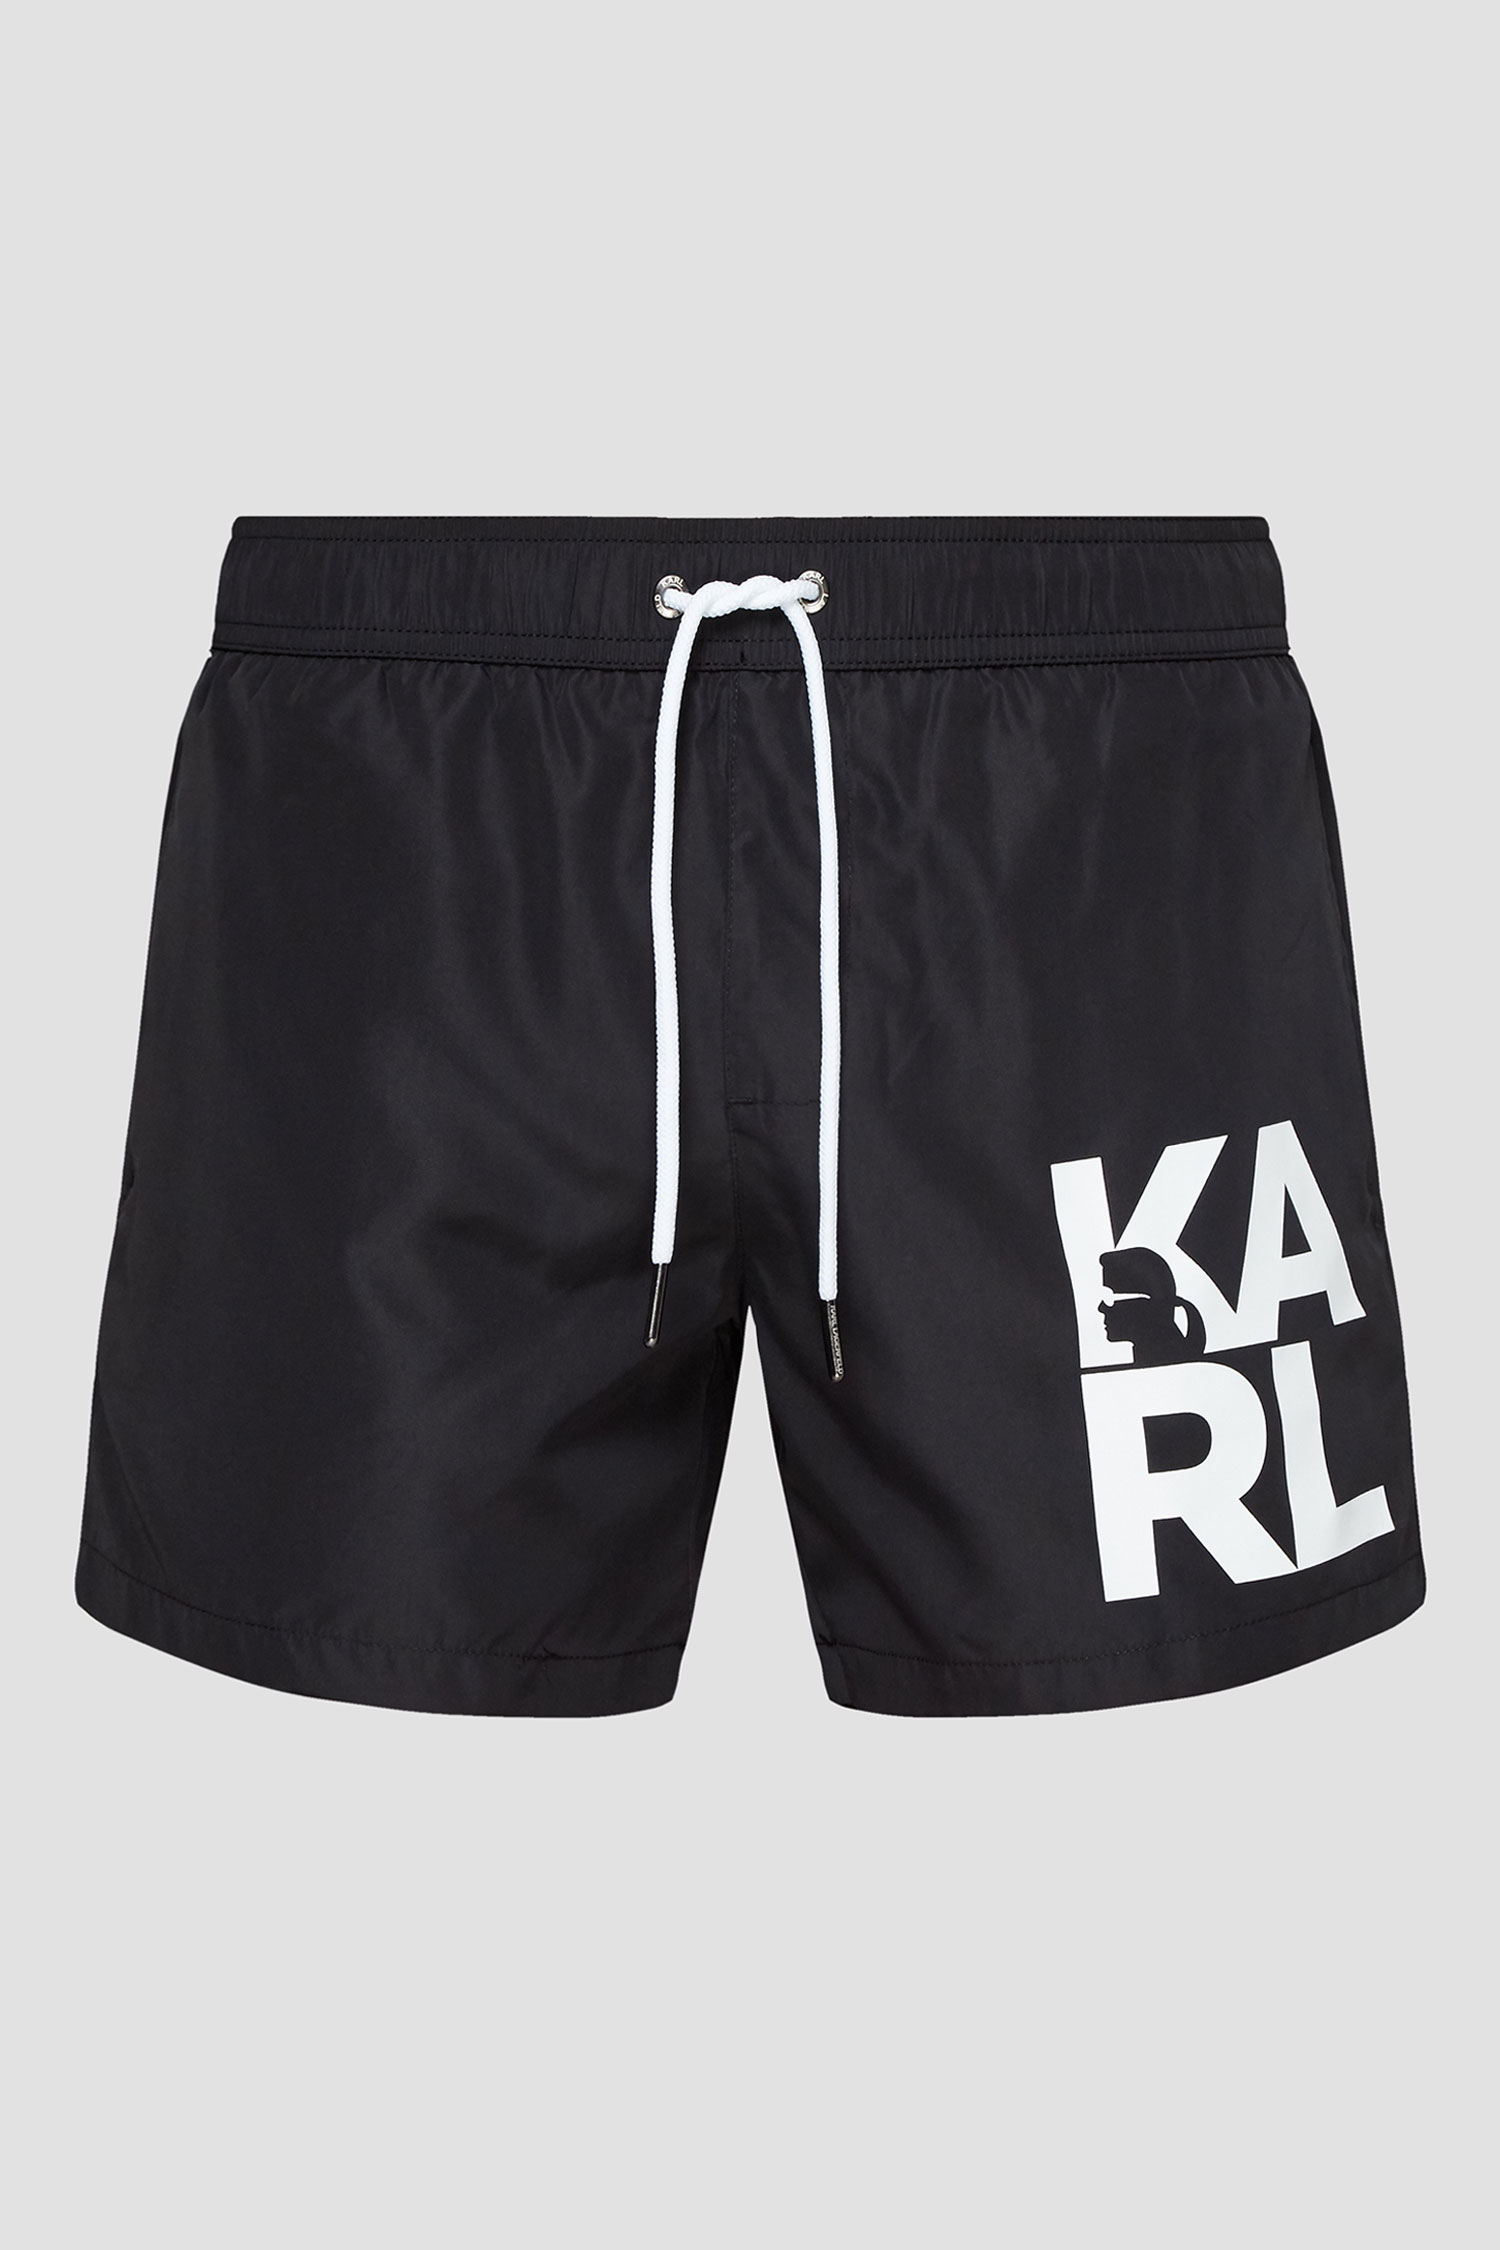 Чорні плавальні шорти для хлопців Karl Lagerfeld KL21MBS02;BLACK